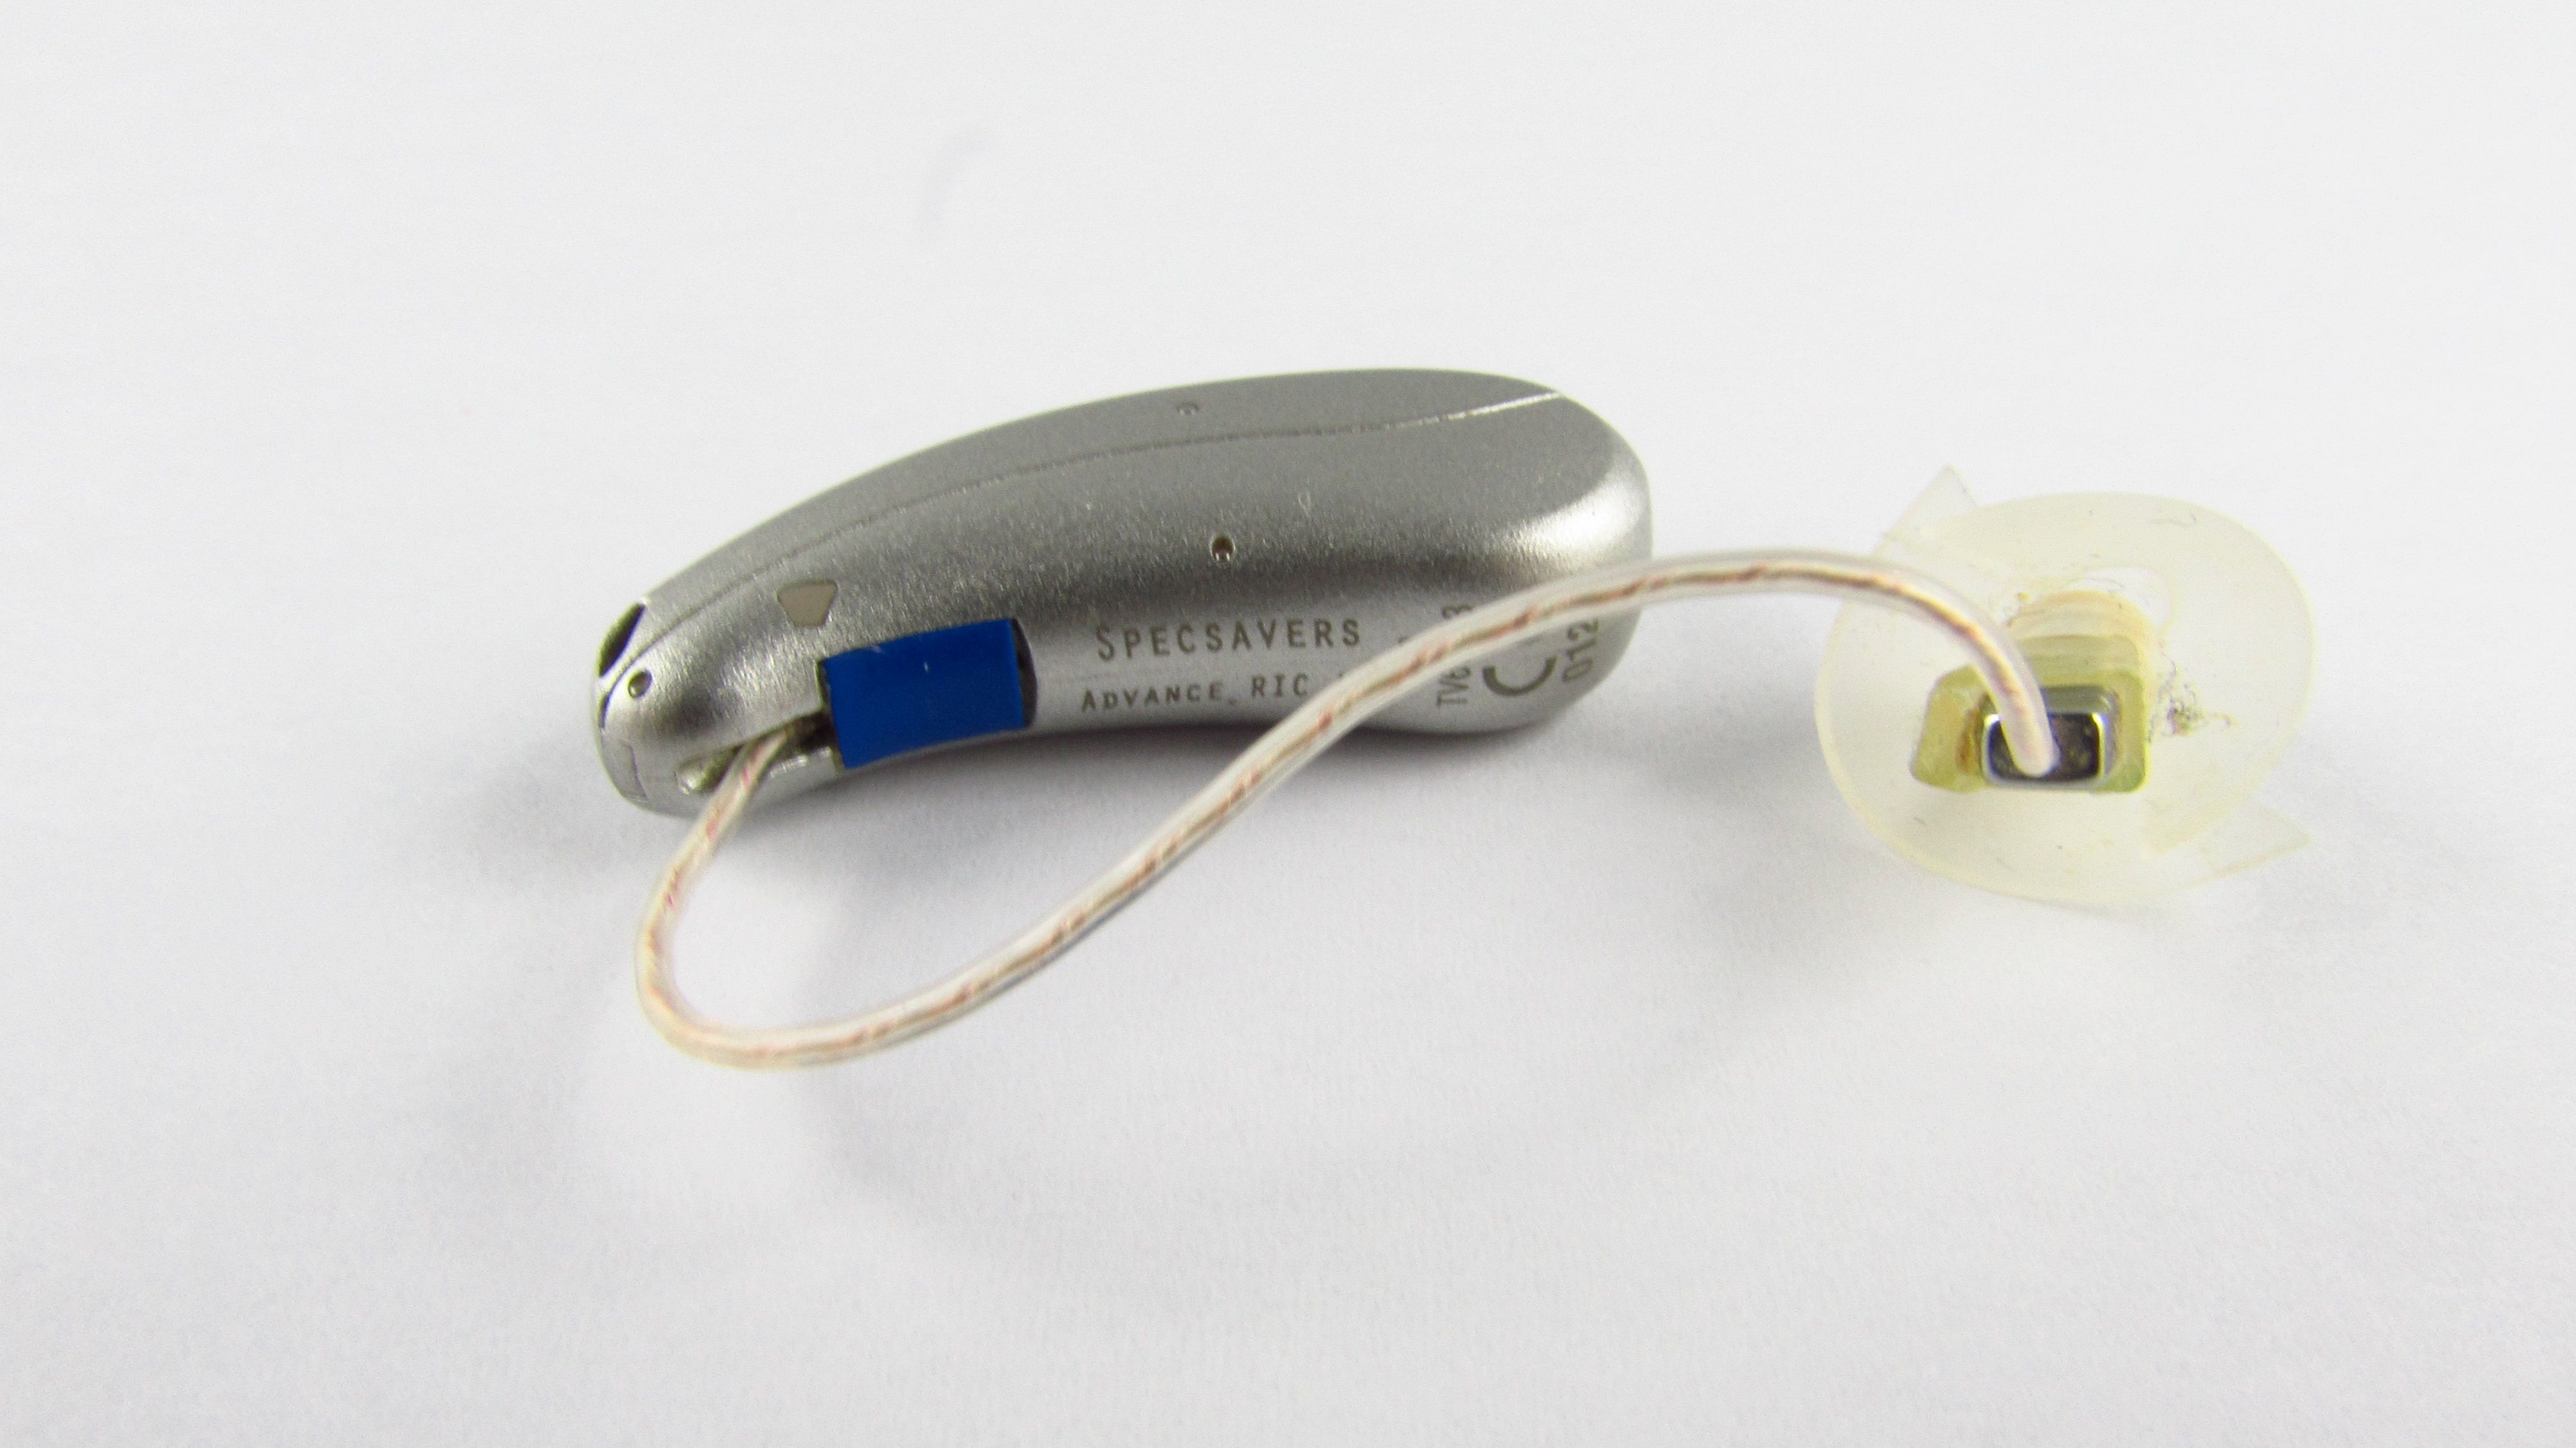 SPECTSAVERS - Zestaw 3 aparatów słuchowych